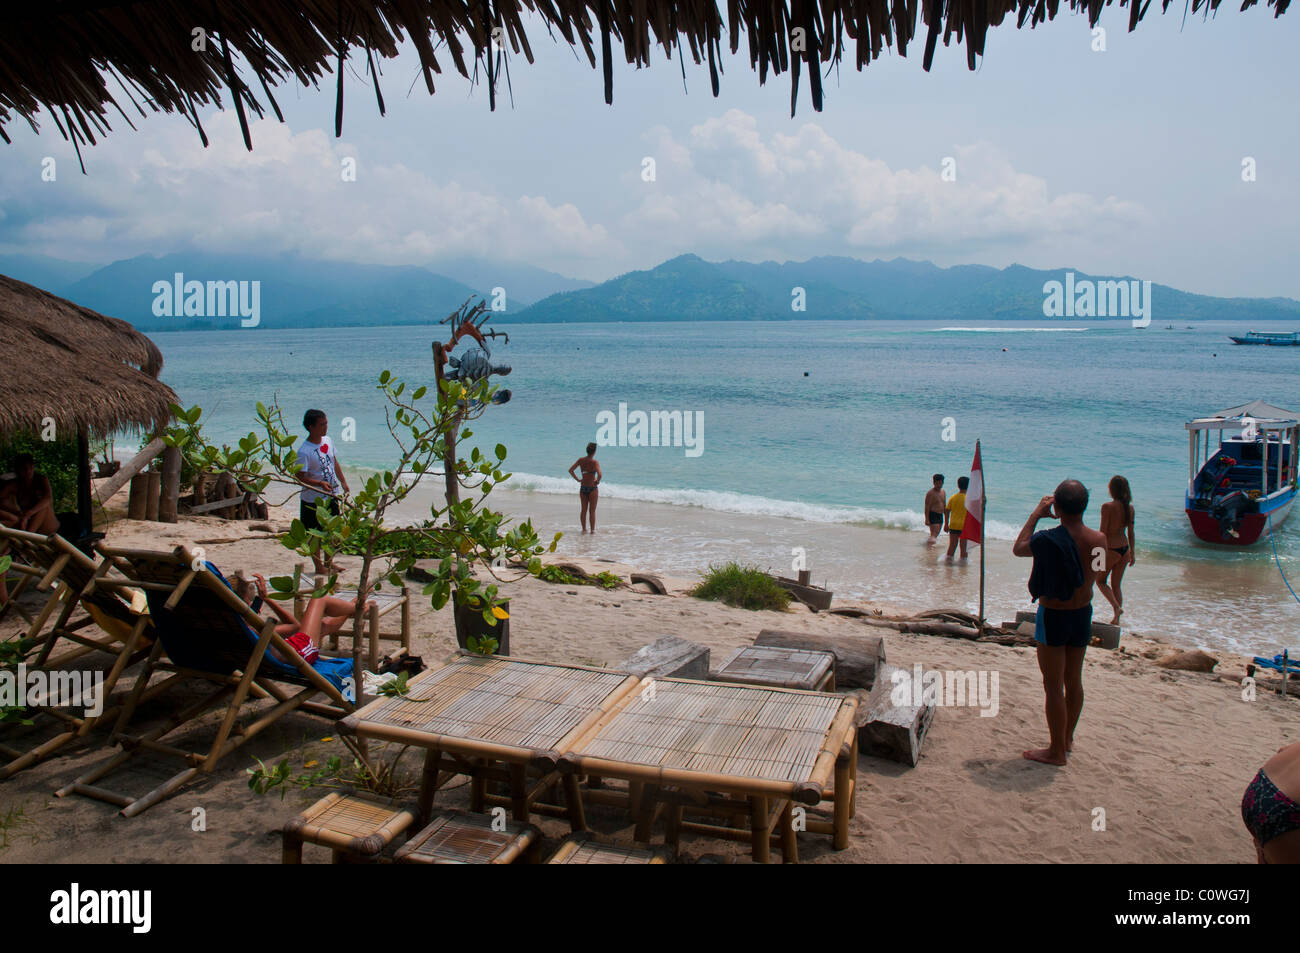 Plage de Gili Air l'île la plus petite de la groupe Gili au large de Lombok en Indonésie Banque D'Images